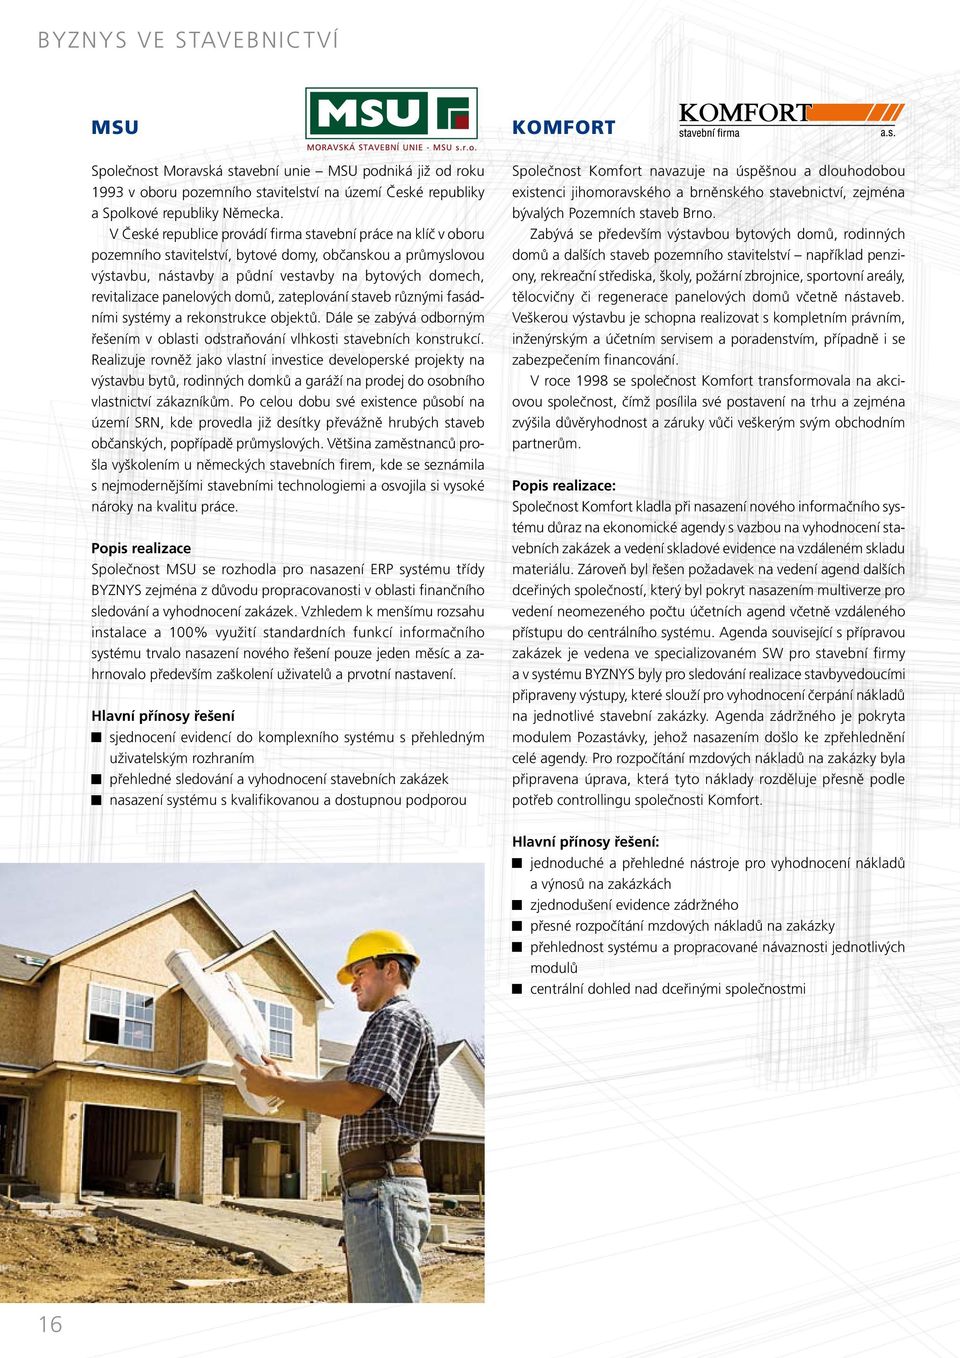 panelových domů, zateplování staveb různými fasádními systémy a rekonstrukce objektů. Dále se zabývá odborným řešením v oblasti odstraňování vlhkosti stavebních konstrukcí.